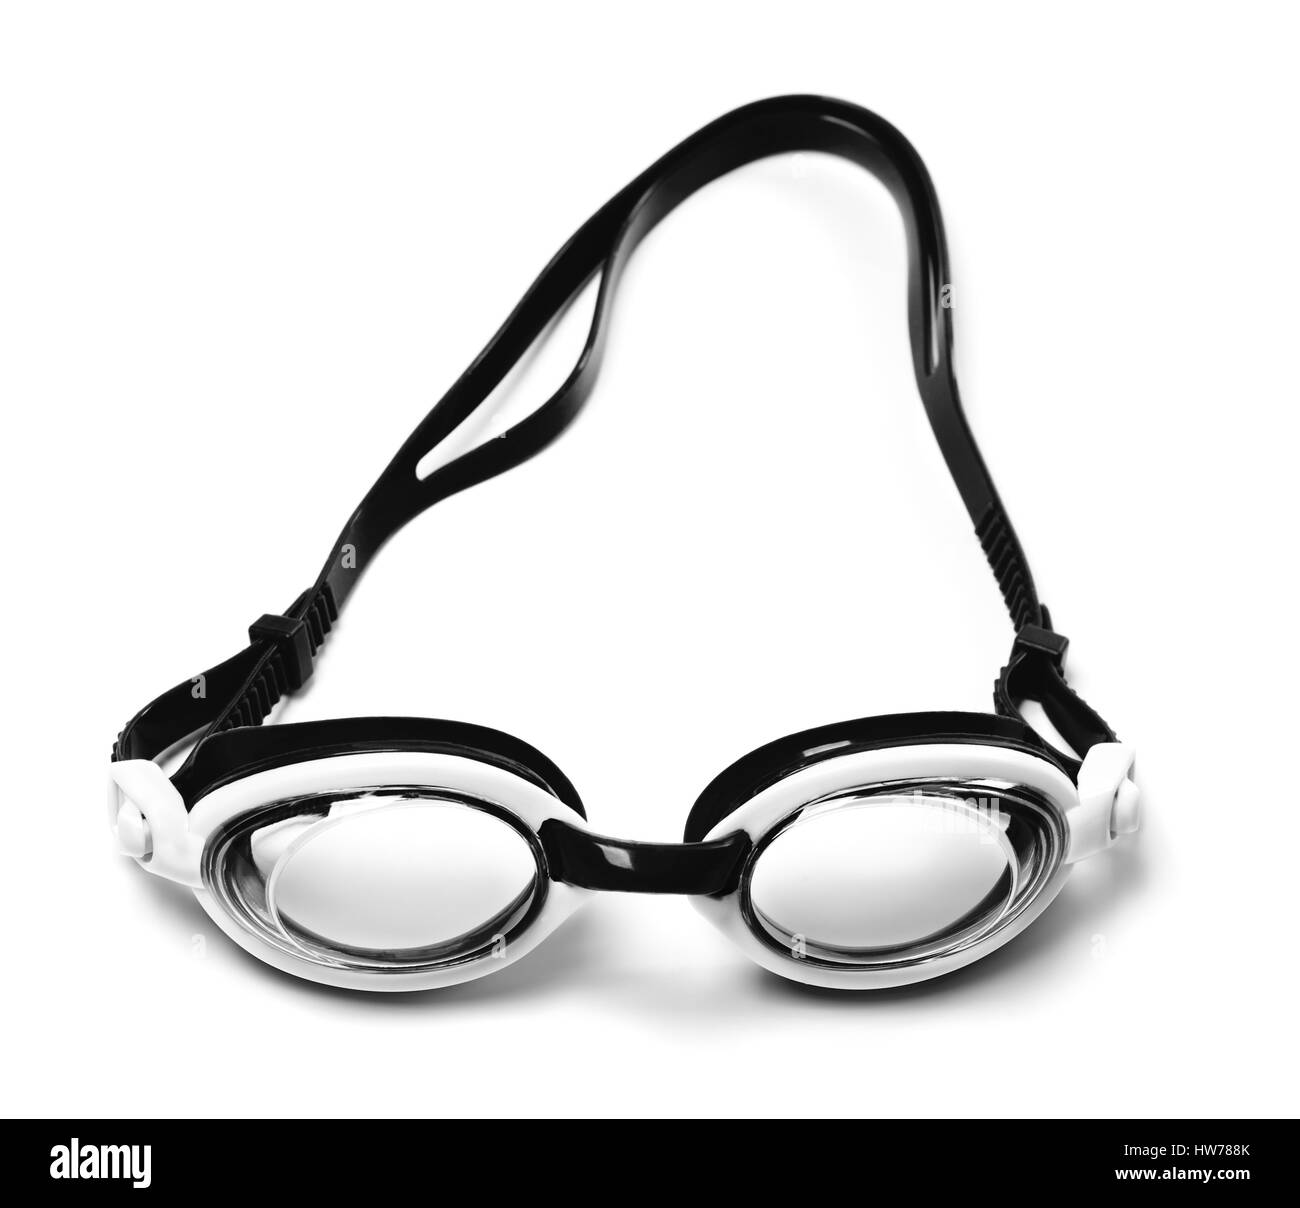 Bianco e nero occhiali per nuoto isolati su sfondo bianco Foto Stock